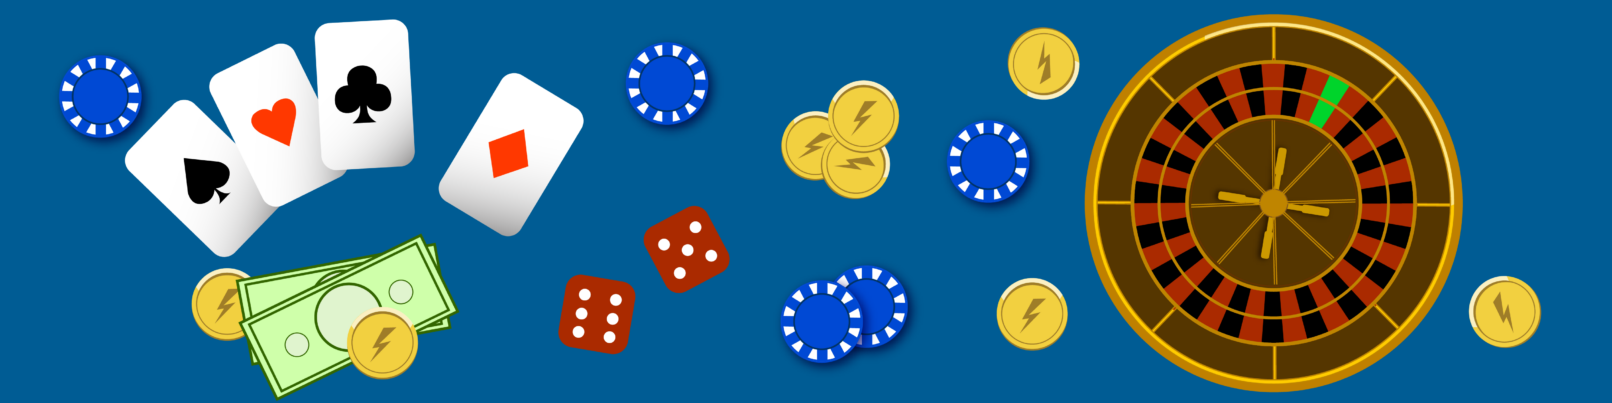 casino games free ist dein schlimmster Feind. 10 Möglichkeiten, es zu besiegen